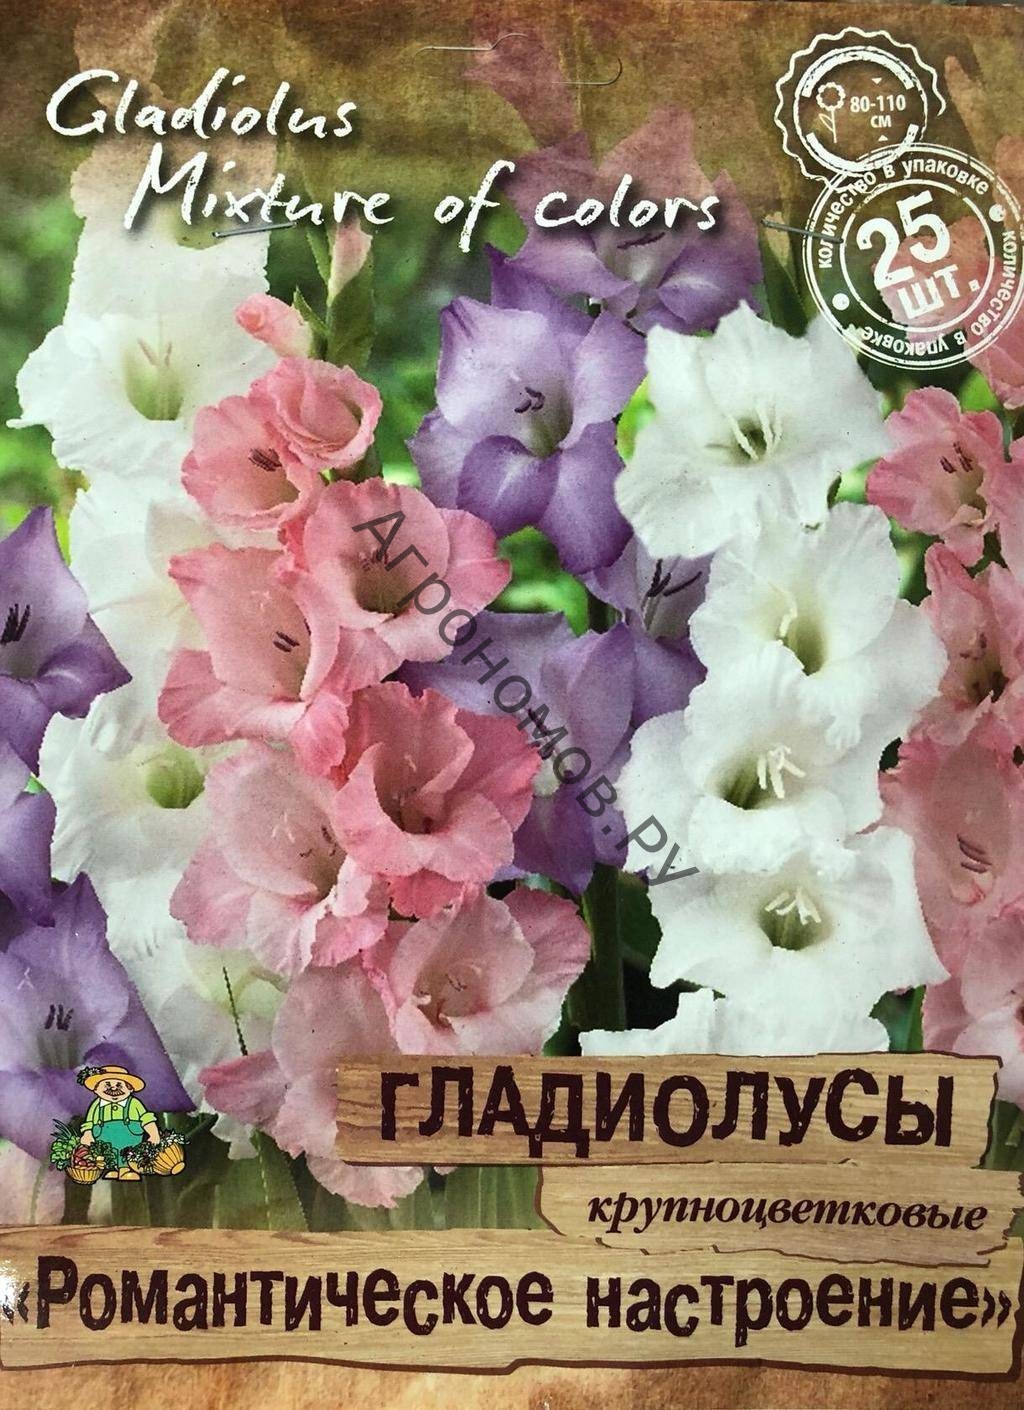 Гладиолусы крупноцветковые "Романтическое настроение" - фото 1